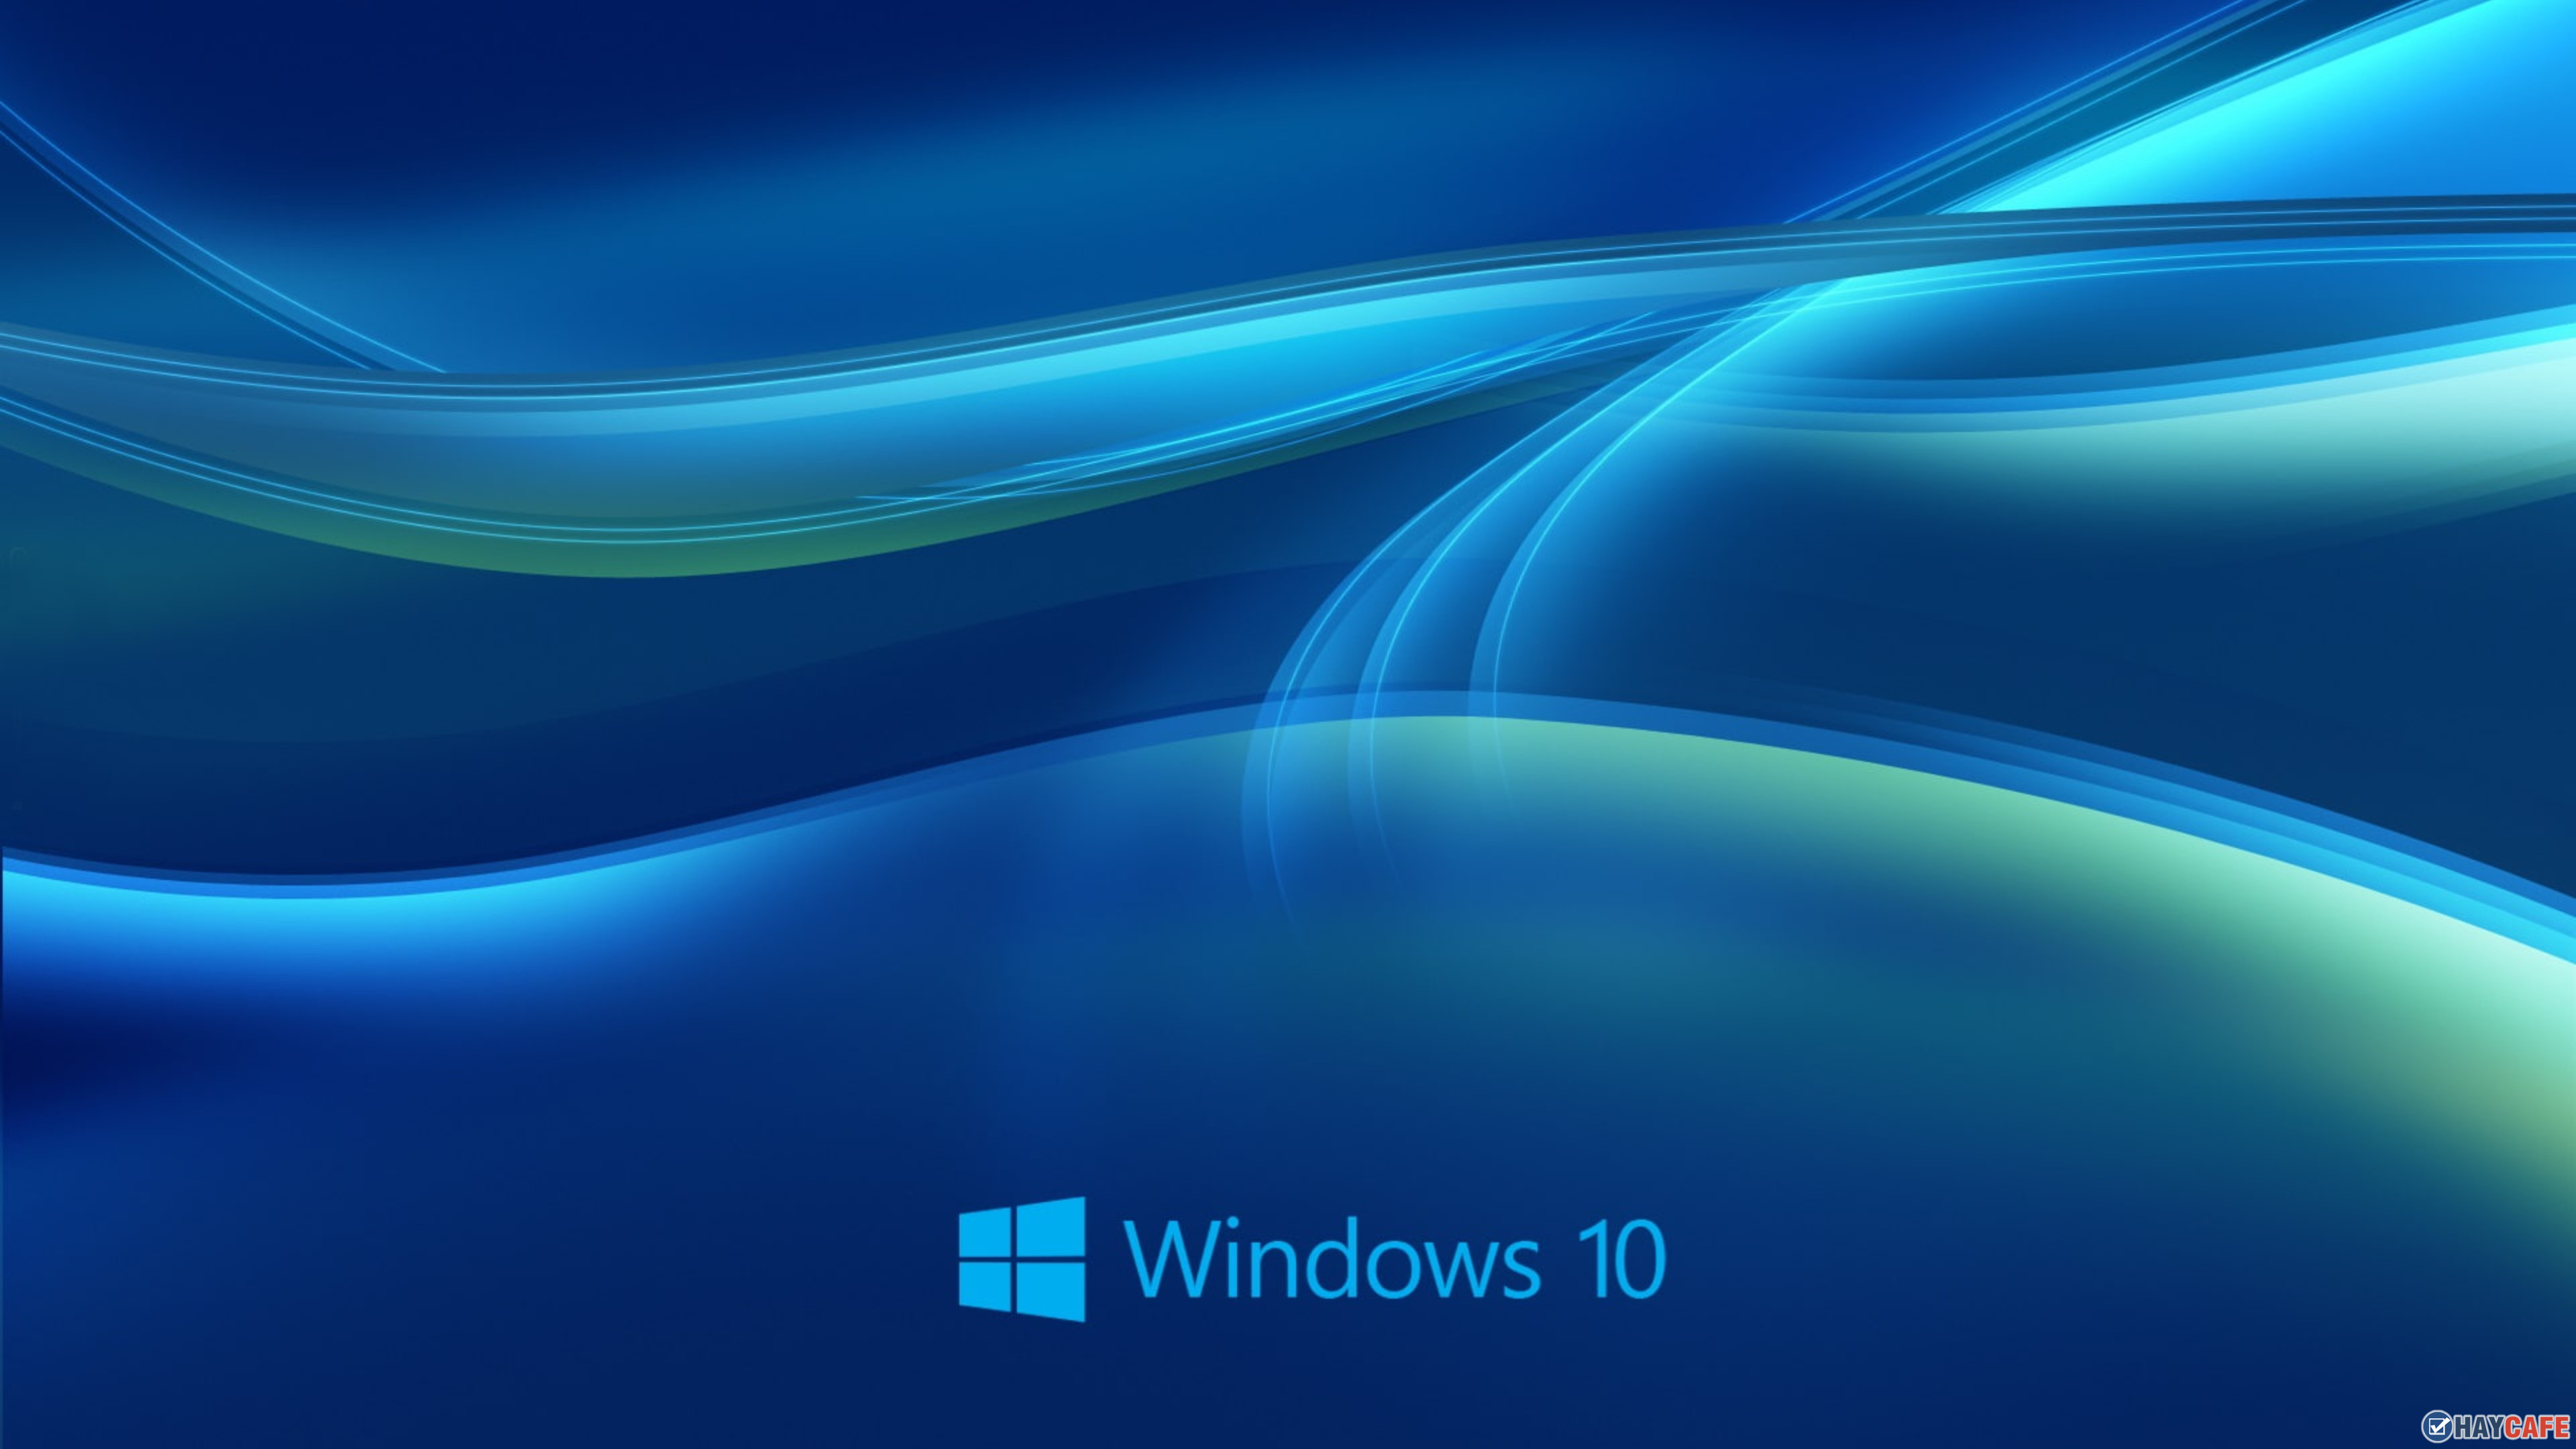 Hướng dẫn Cài đặt hình ảnh siêu đẹp của Bing làm hình nền Desktop trên  Windows 10  TECHRUMVN